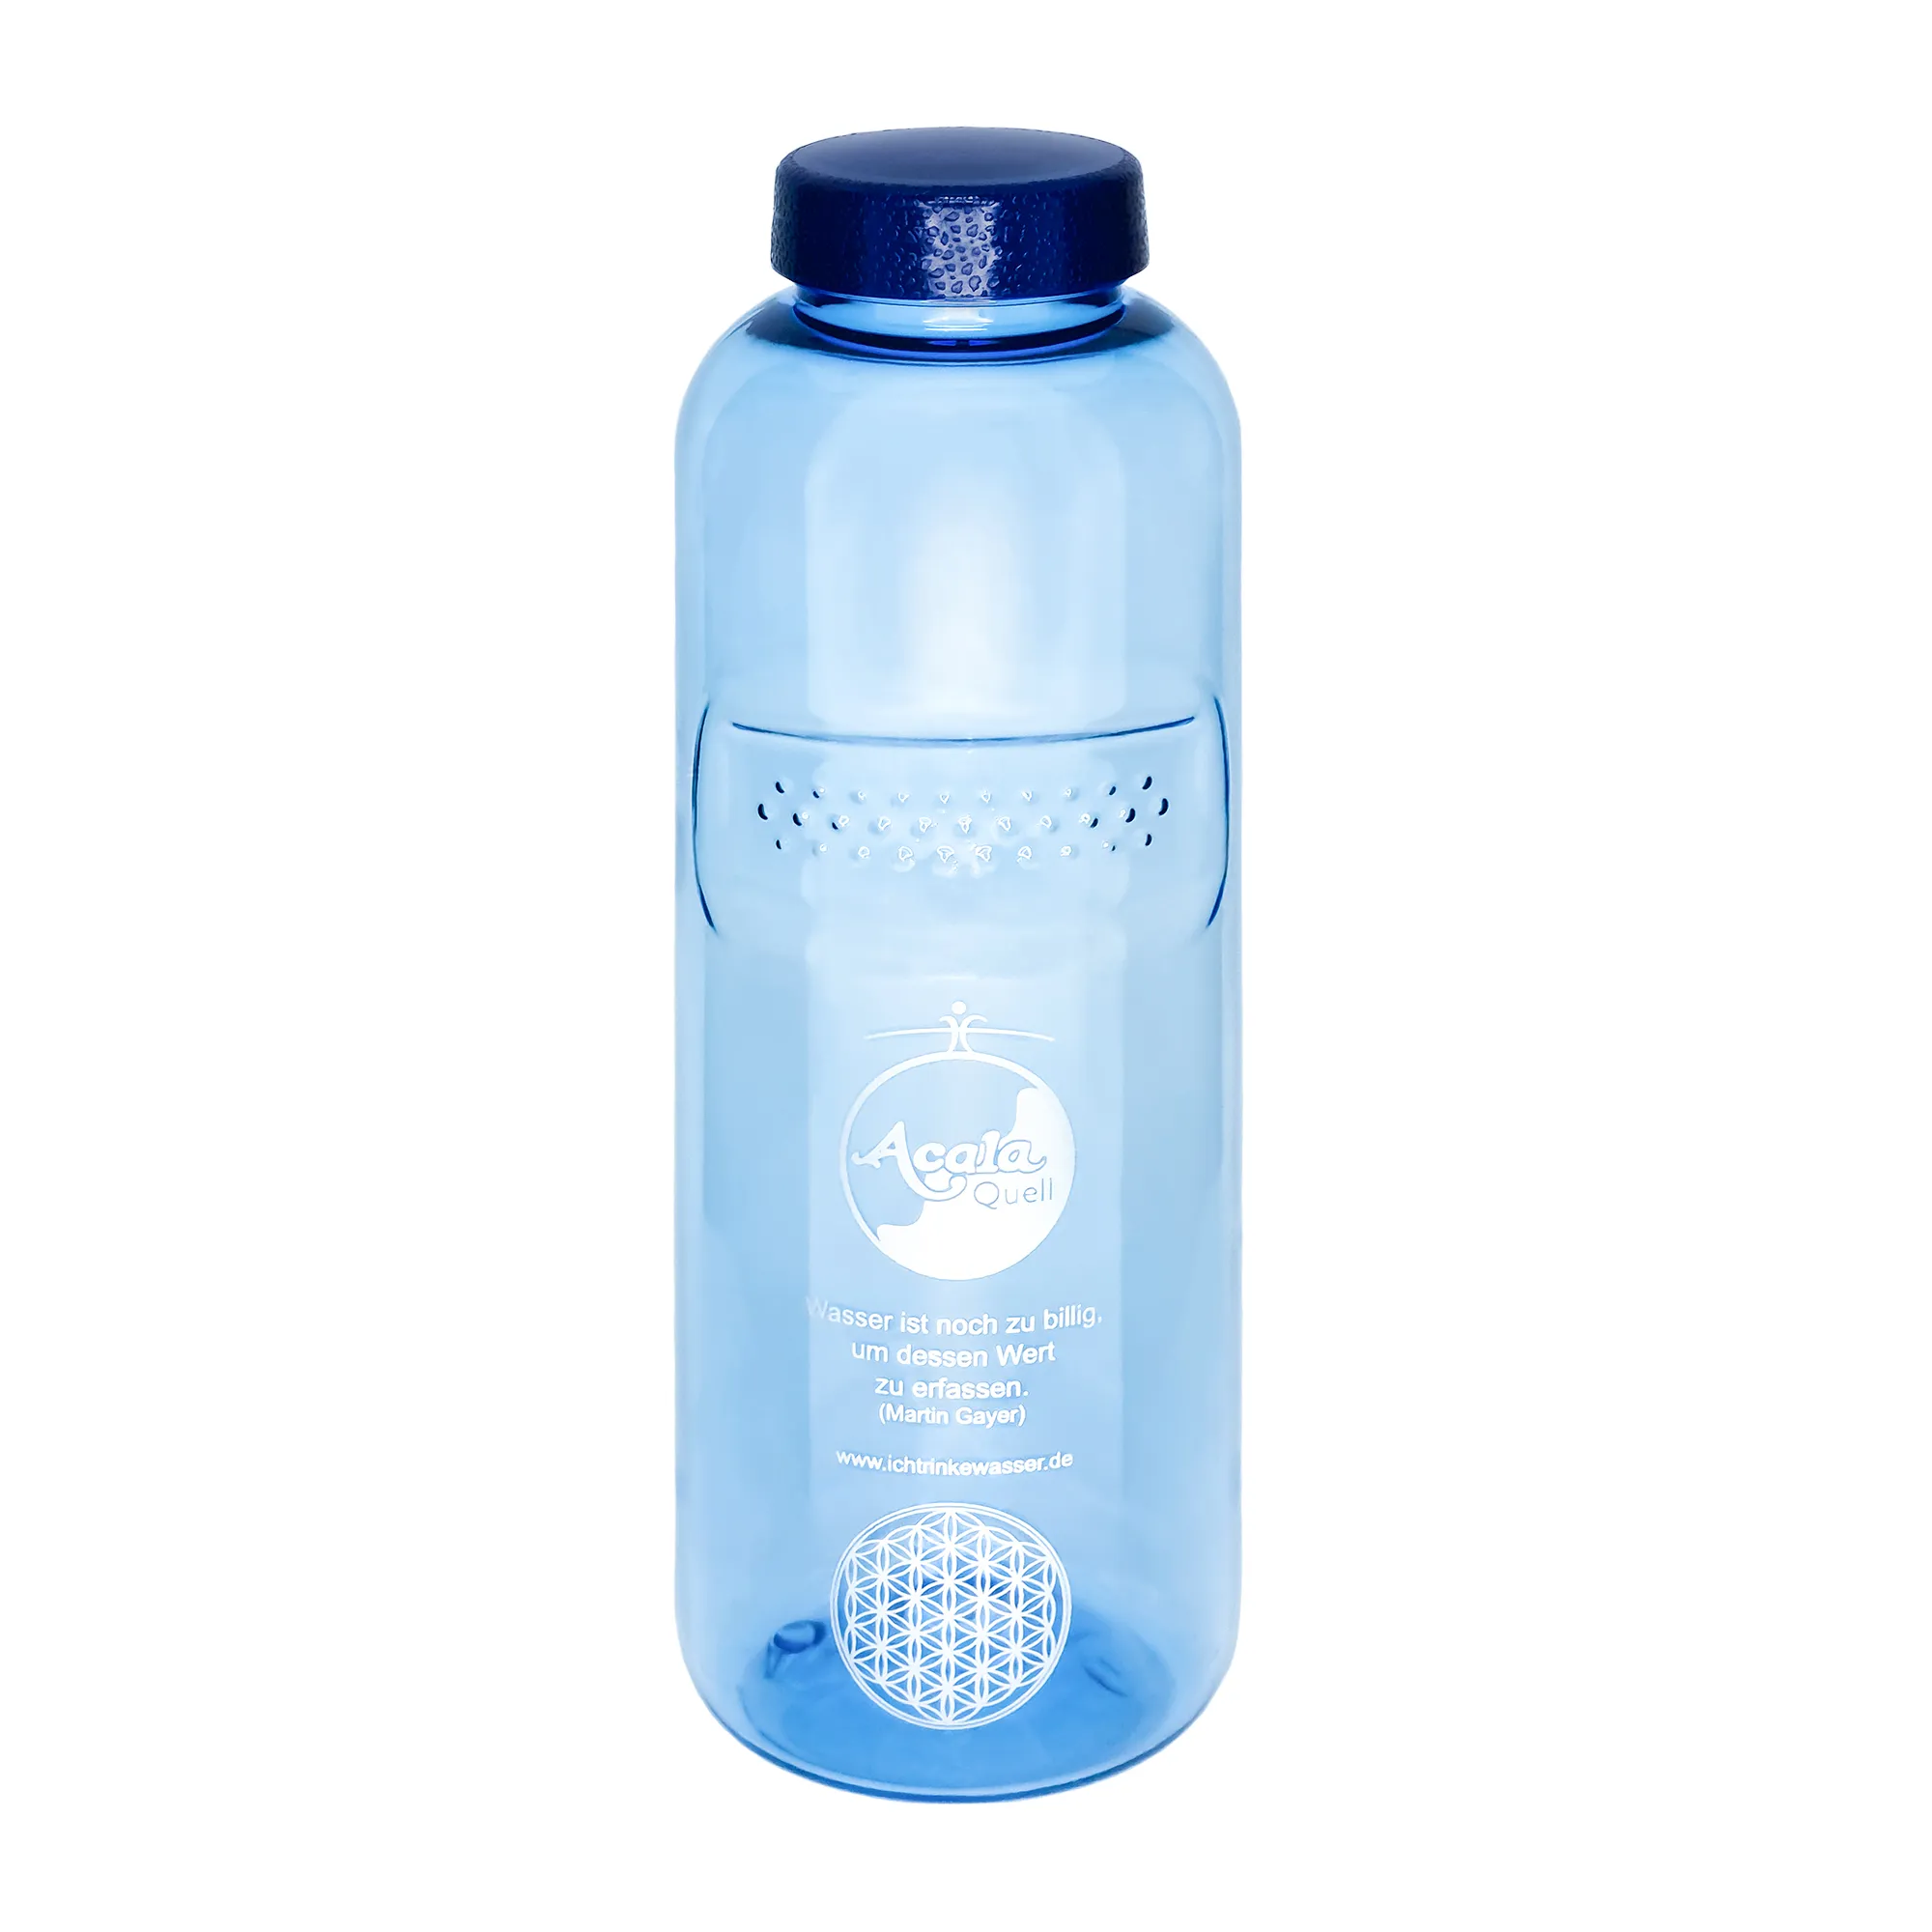 Zu sehen ist eine blaue Tritan Trinkflasche Grip mit dunkelblauem Schraubdeckel vor weißem Hintergrund. Man sieht ein silbernes Acala Logo und die Blume des Lebens auf der Flasche.